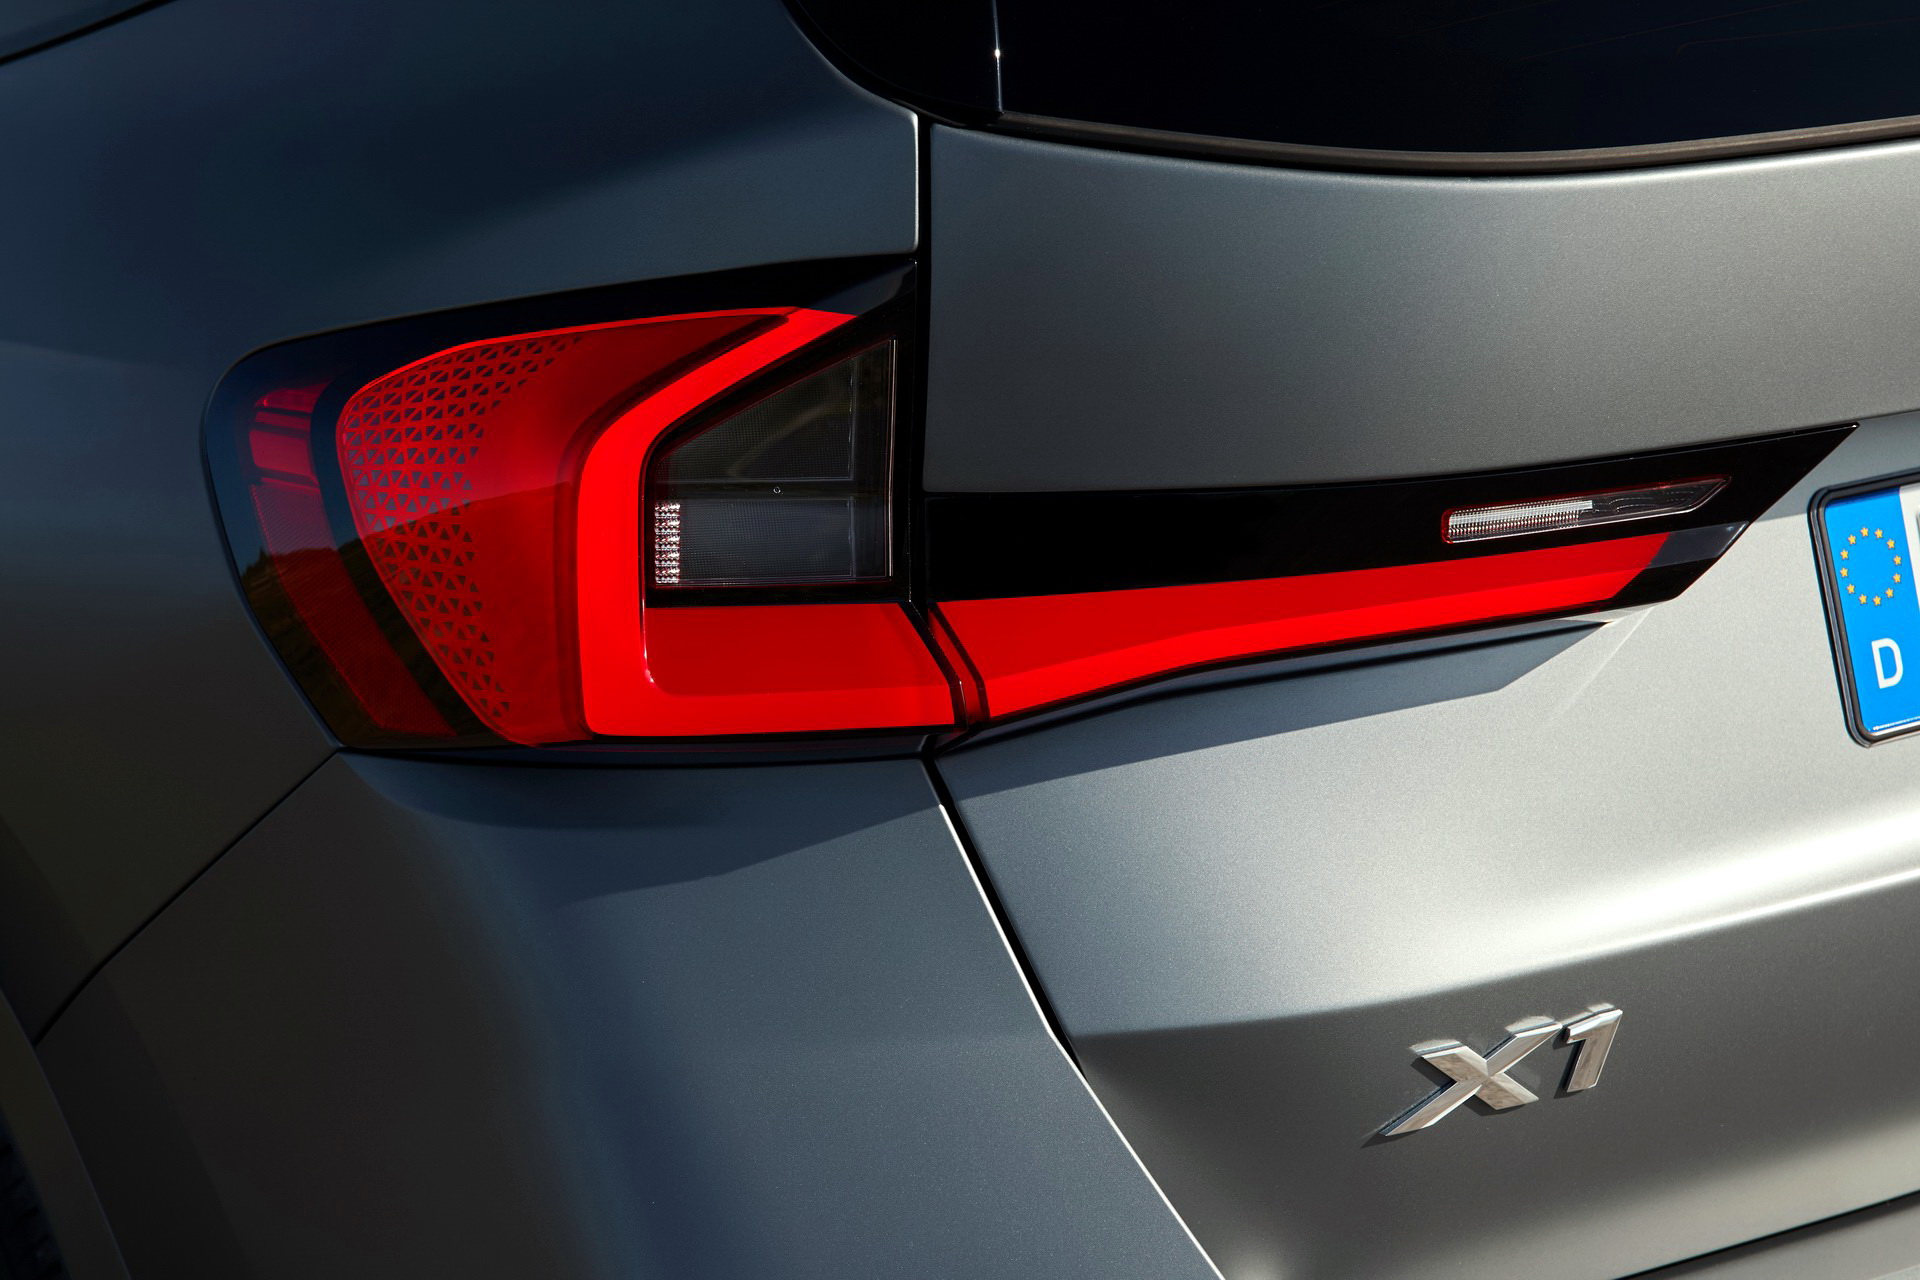 Yeni 2023 BMW X1 tanıtıldı: İşte tasarımı ve özellikleri